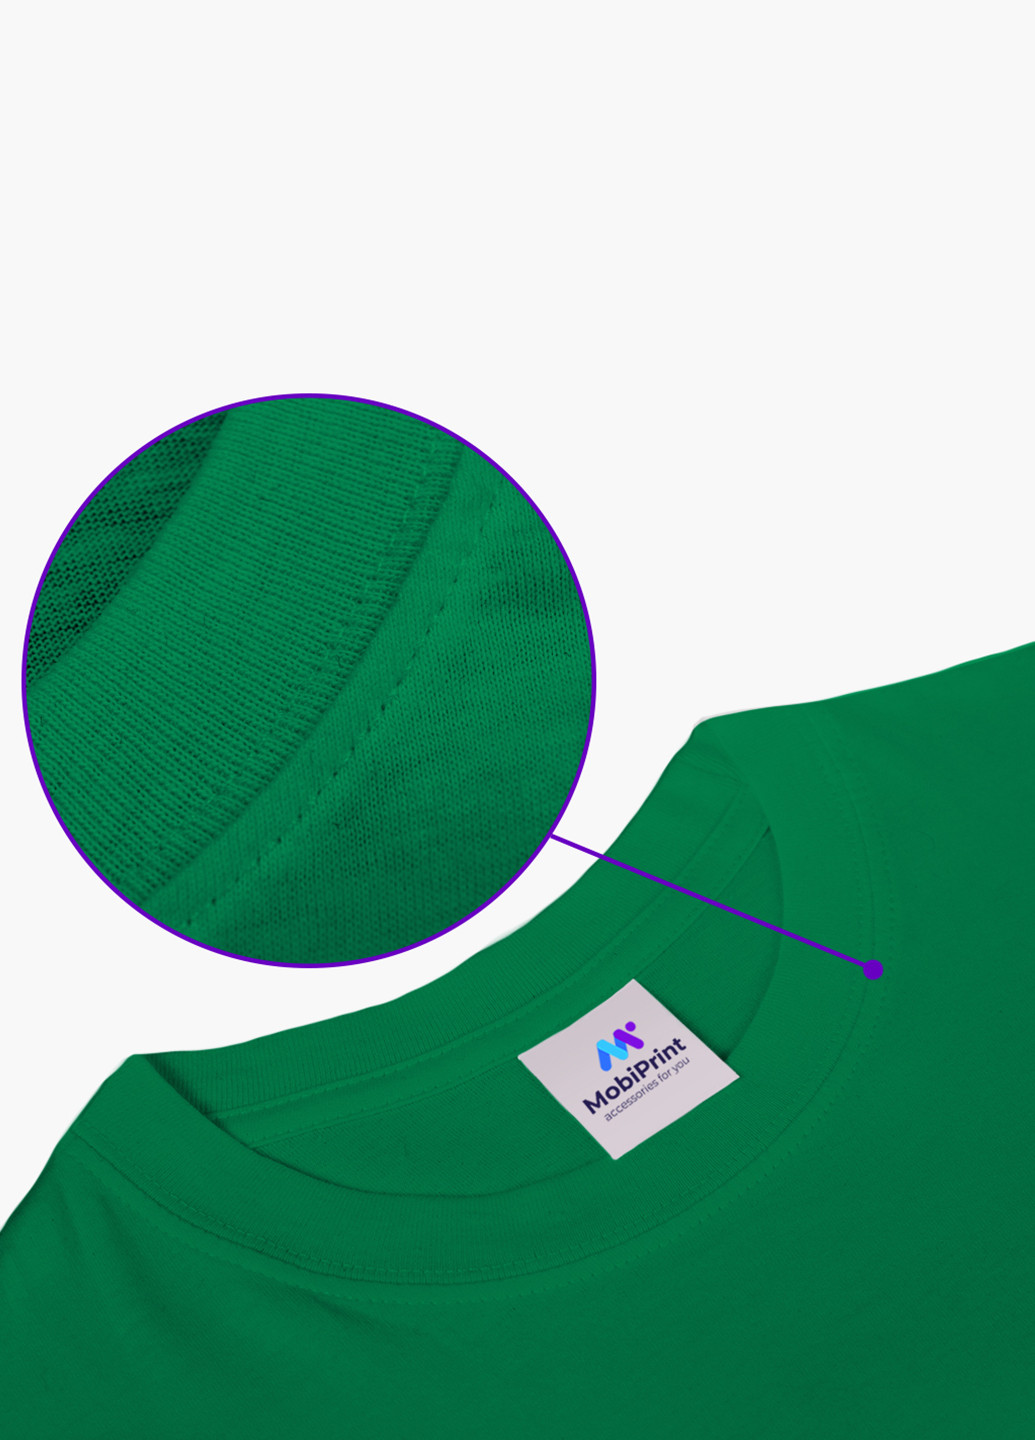 Зеленая демисезонная футболка детская робокар поли (robocar poli)(9224-1617) MobiPrint